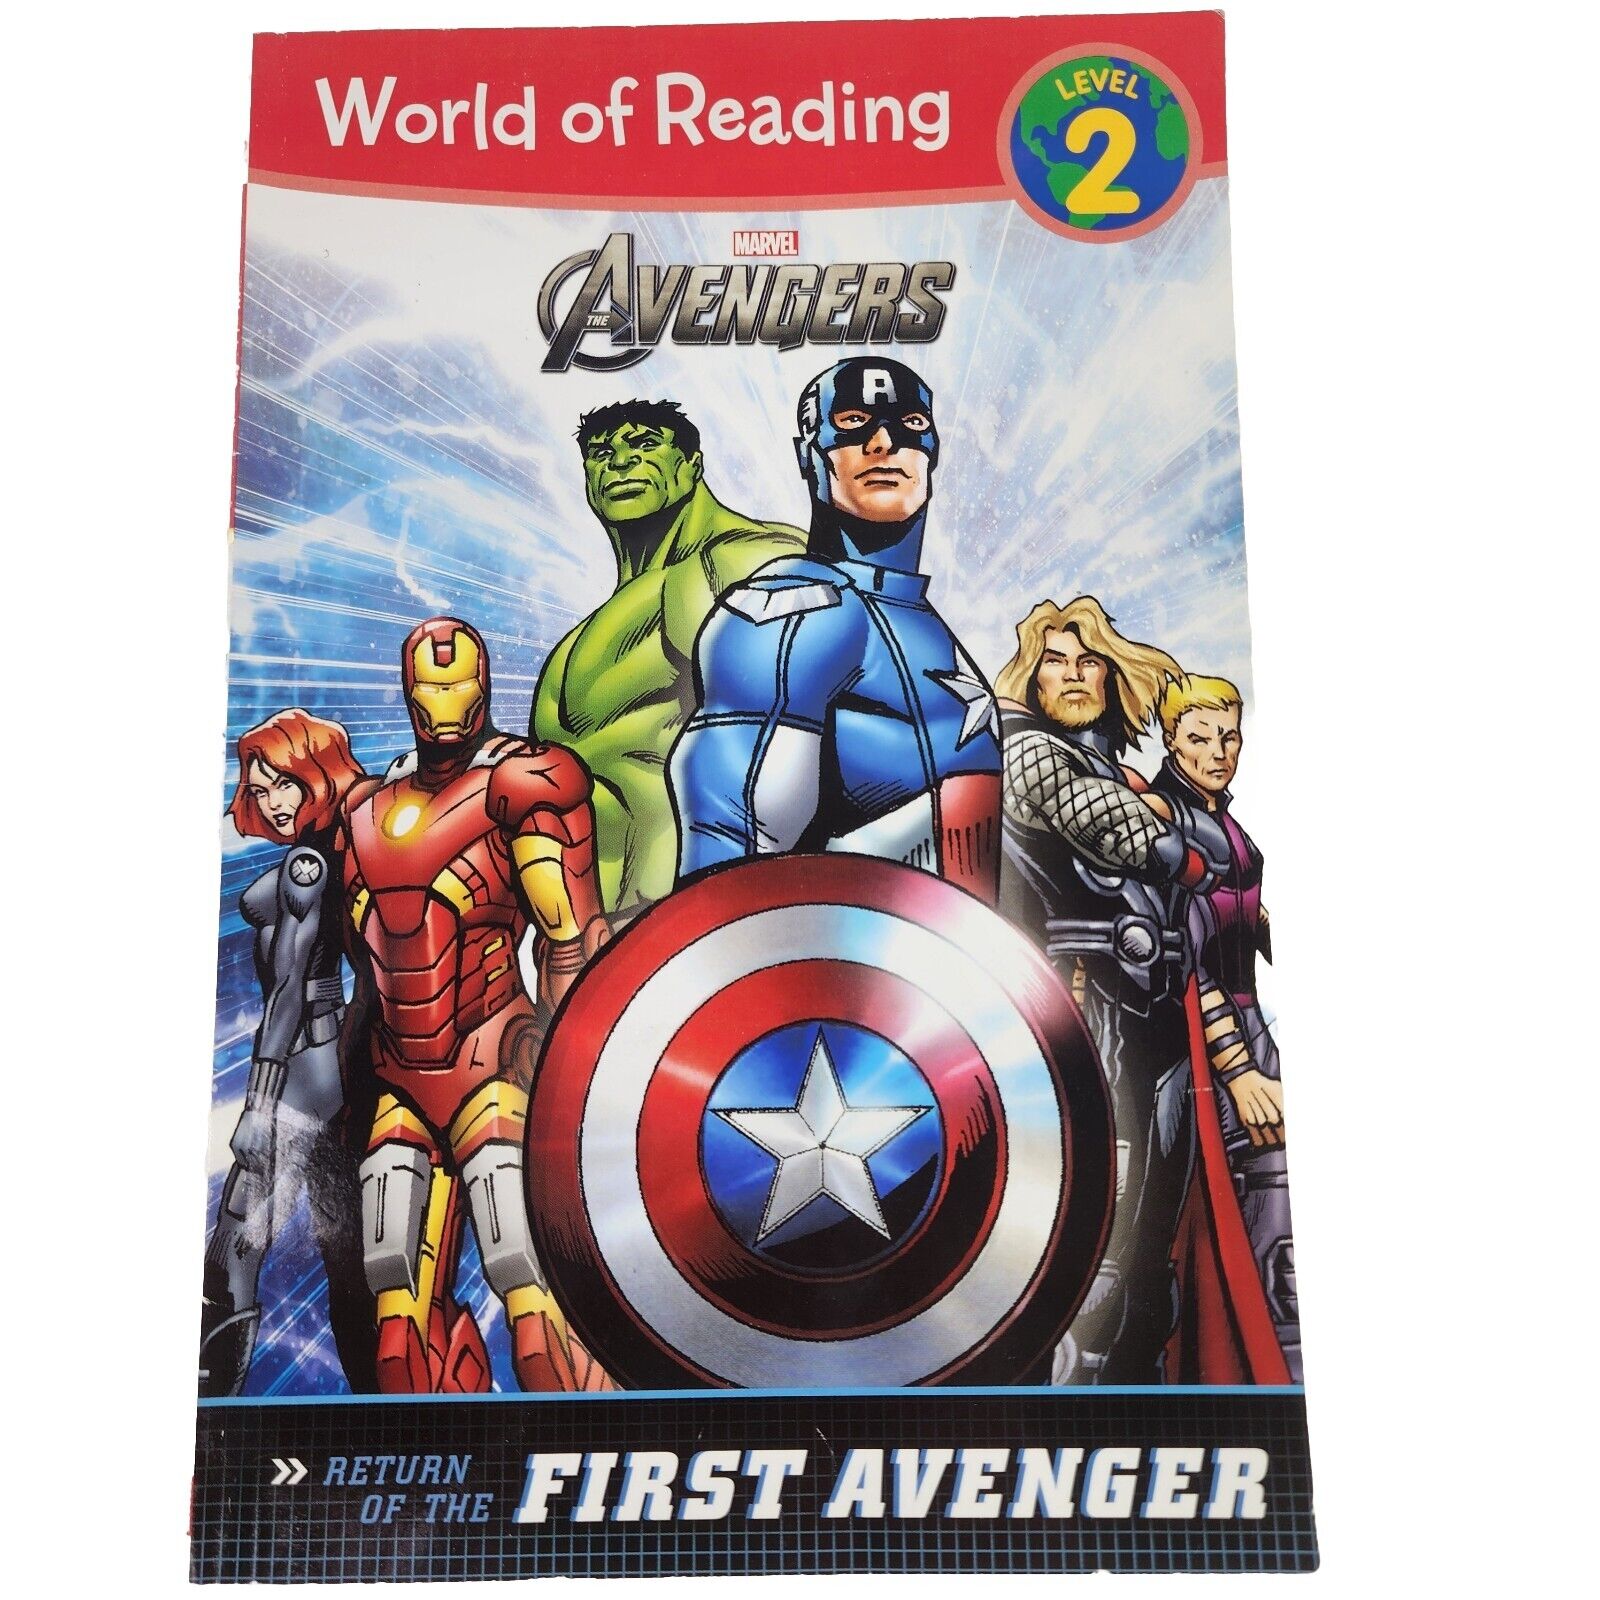 The Avengers The Return of the First Avenger (Level 2) Marvel World Of Reading 